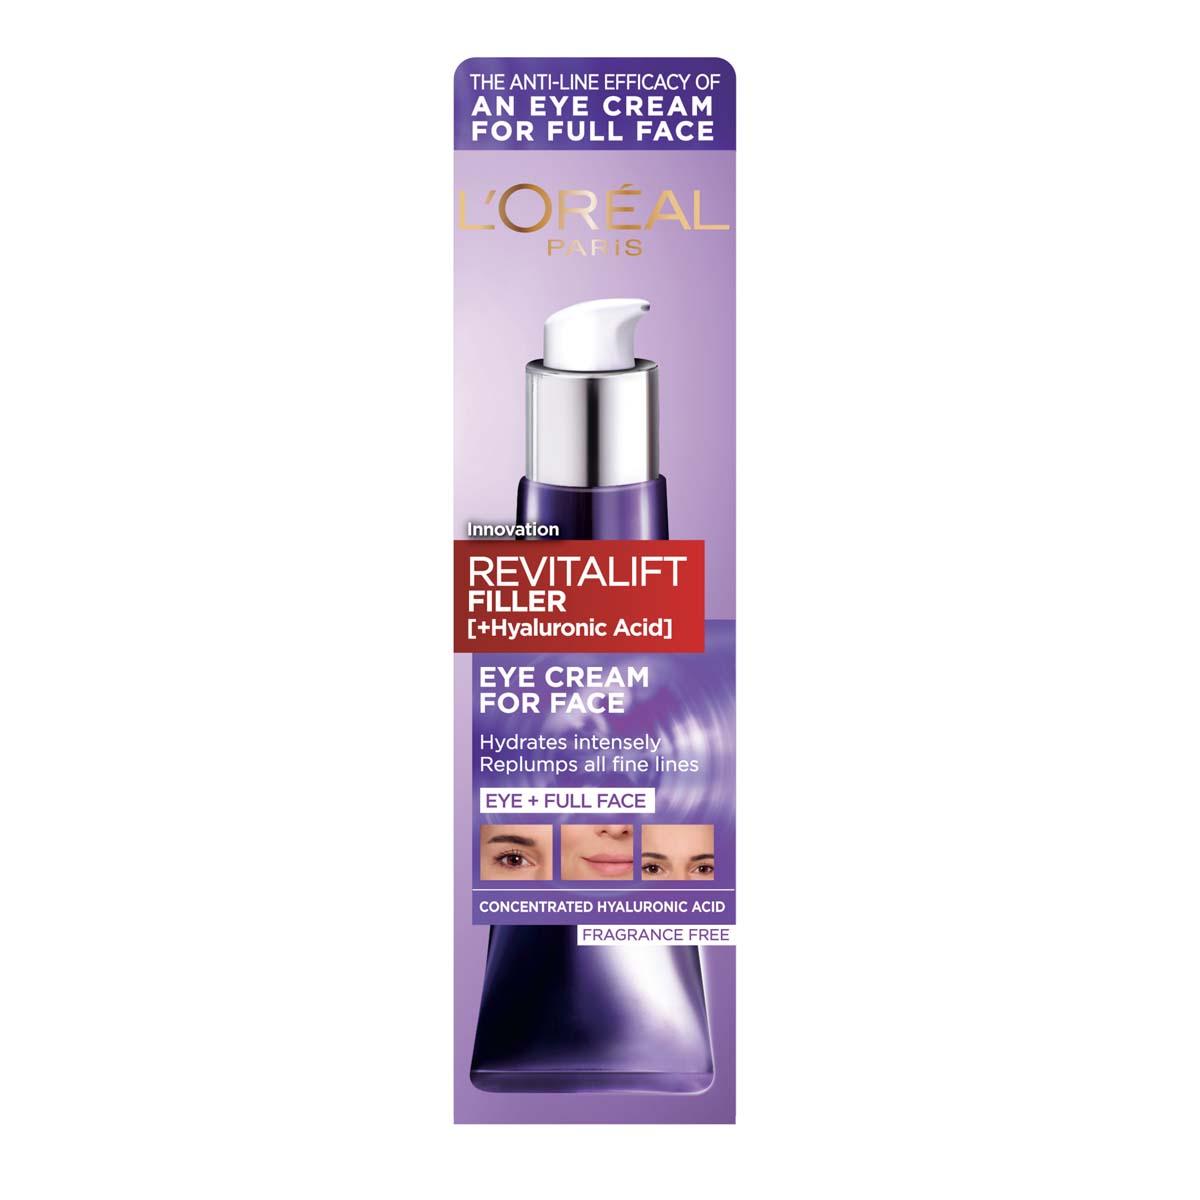 L Oreal Paris Revitalift Filler [ Hyaluronic Acid] Eye Cream For Face 30ml Sephora Uk